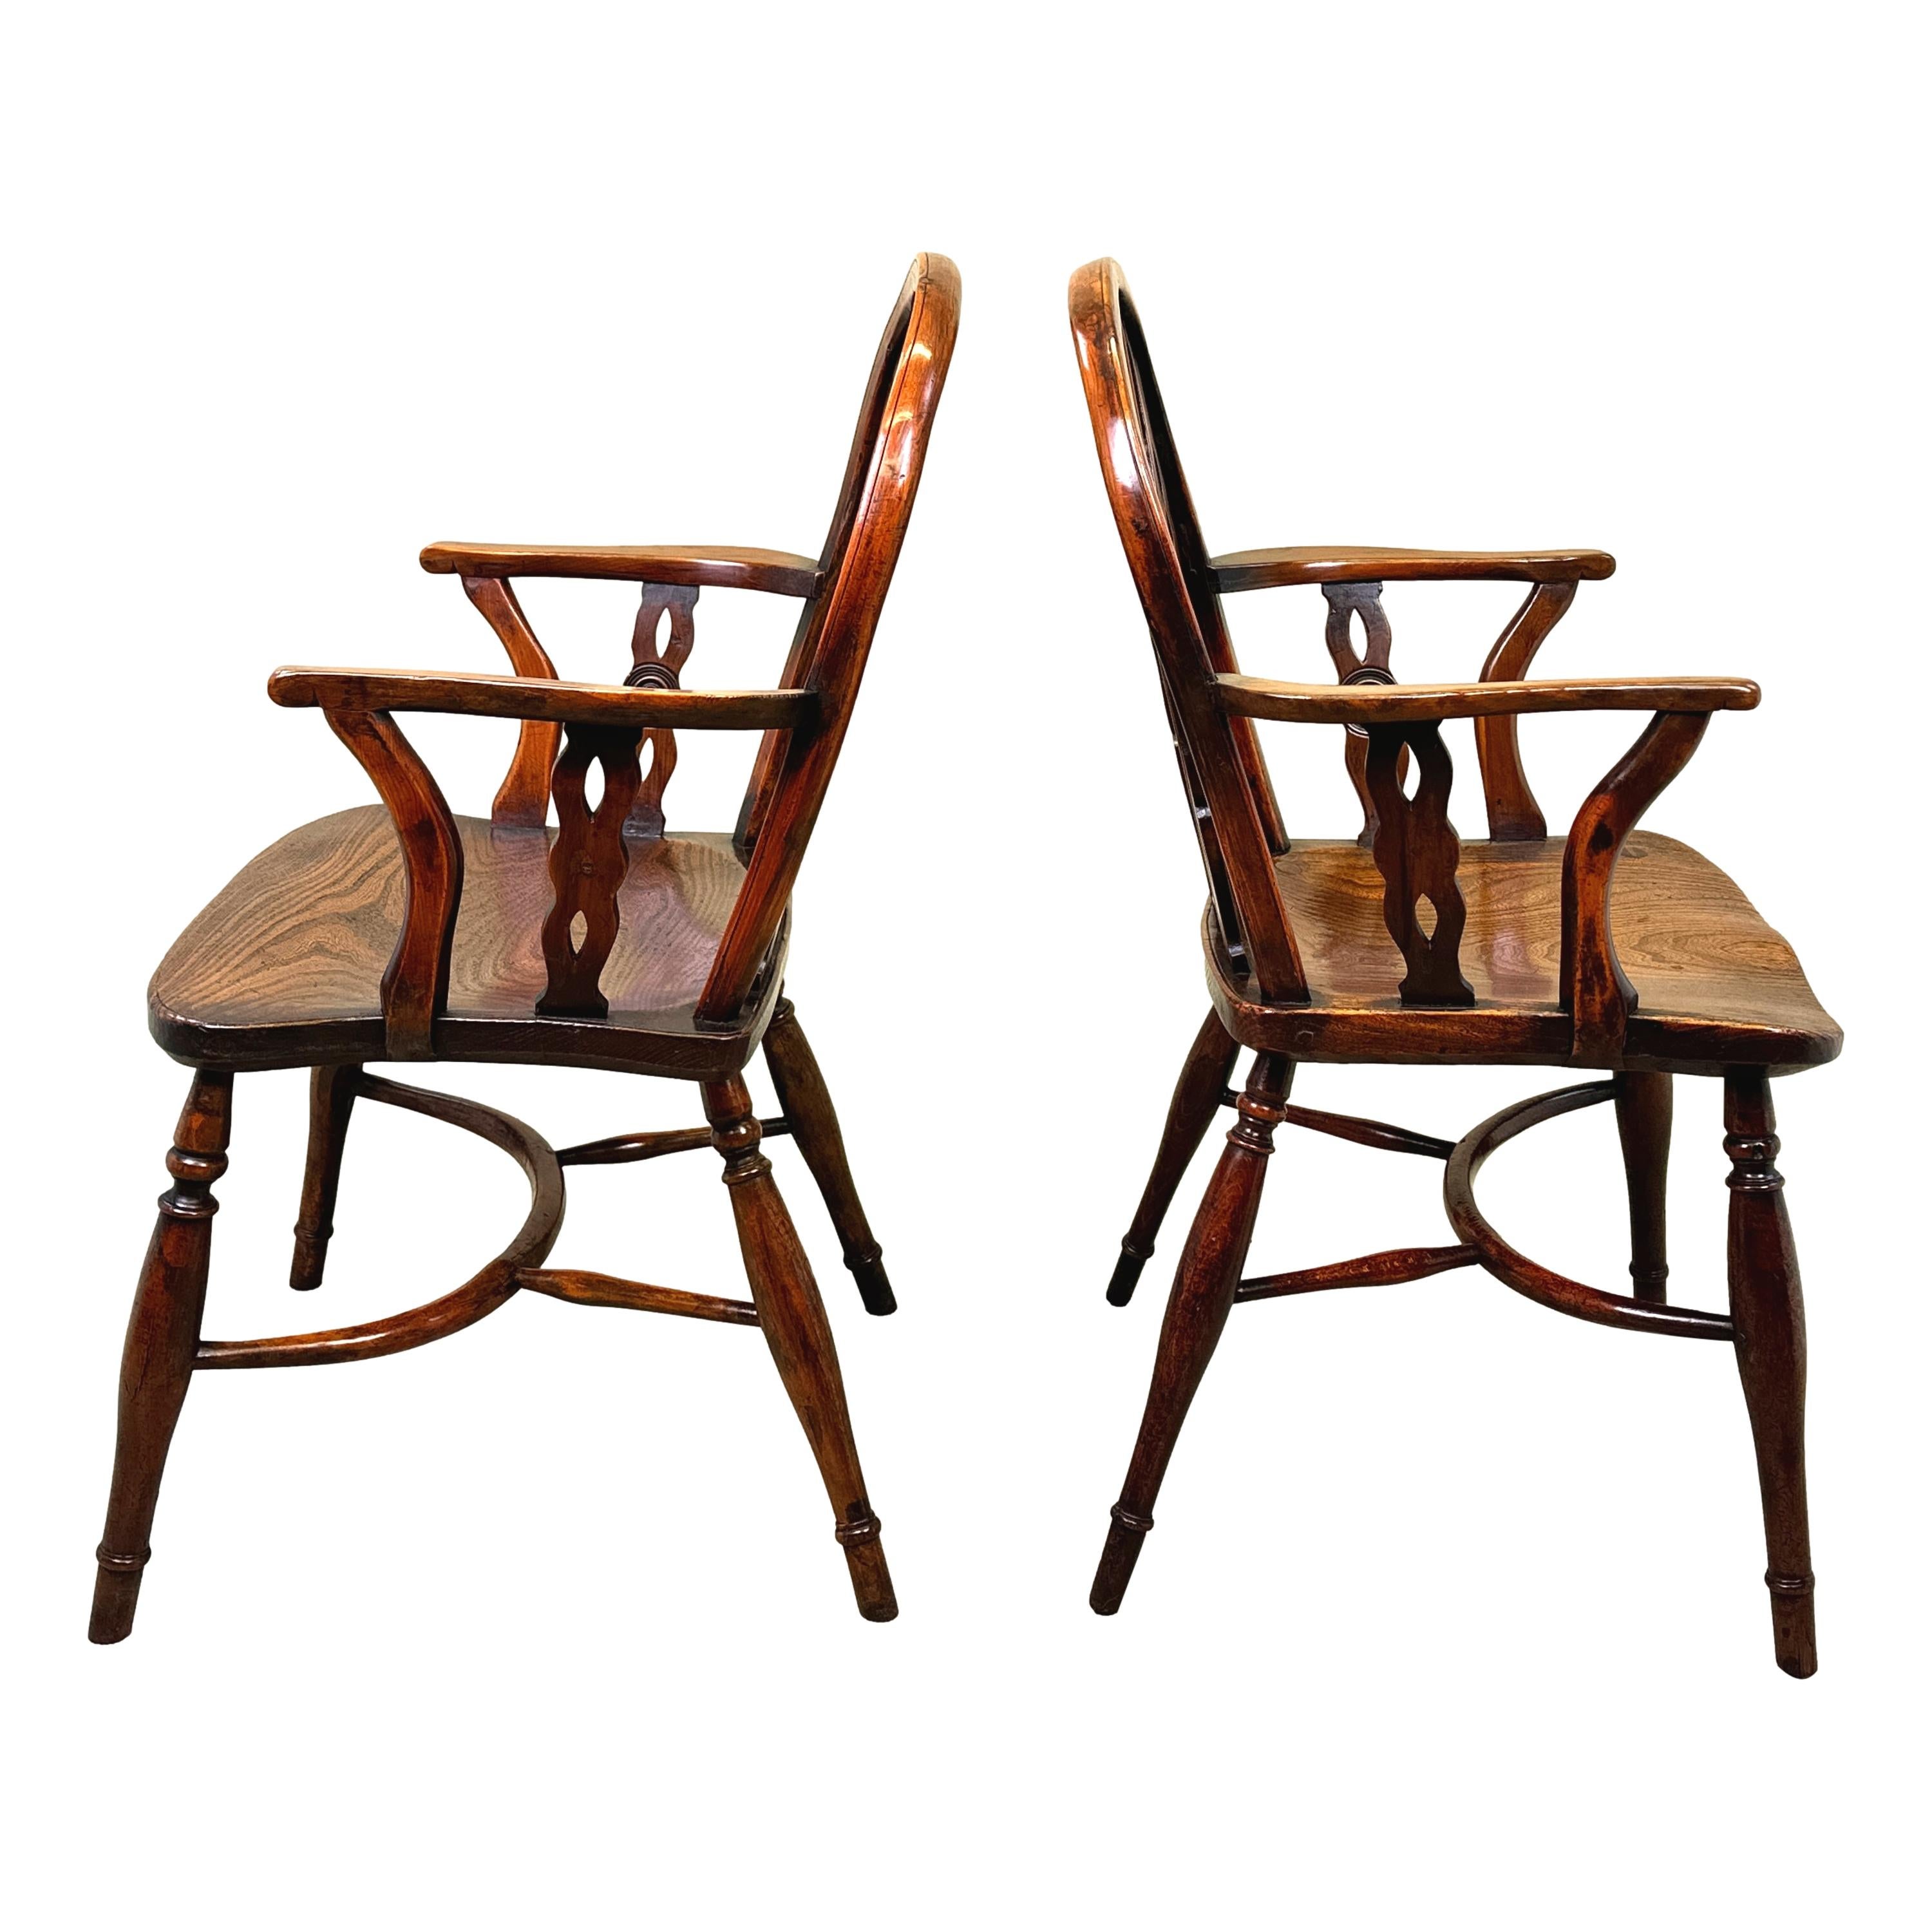 Eine charmante fast übereinstimmende Paar des frühen 19. Jahrhunderts, Georgian, Eibenholz, Low Back Windsor Sessel mit drei durchbohrt und geformt Splats mit zentralen Satz Roundels, oder Draughts, abwechselnd mit gedrehten Spindeln zu Rücken, über